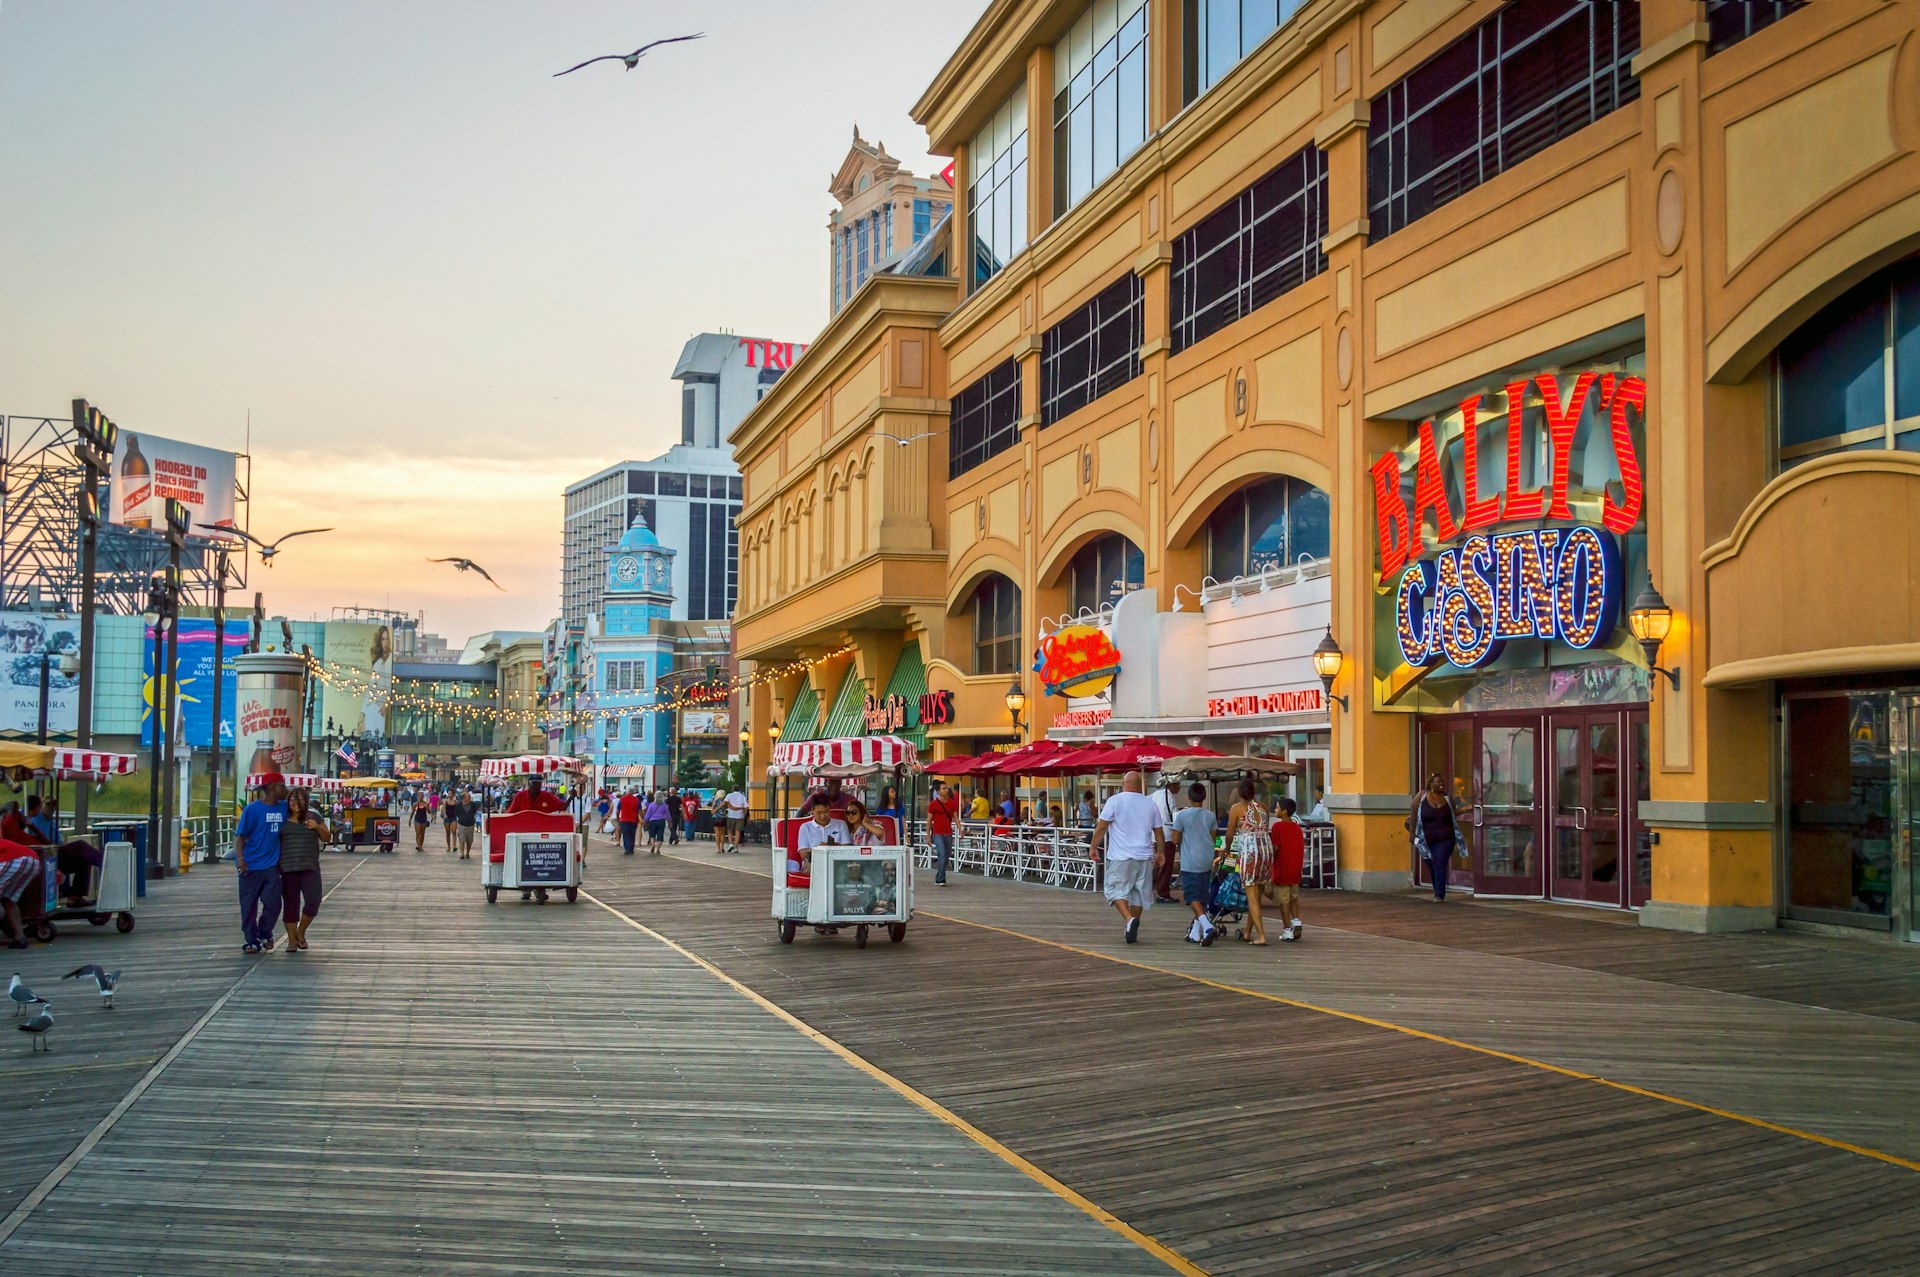 The Boardwalk in Atlantic City, New Jersey